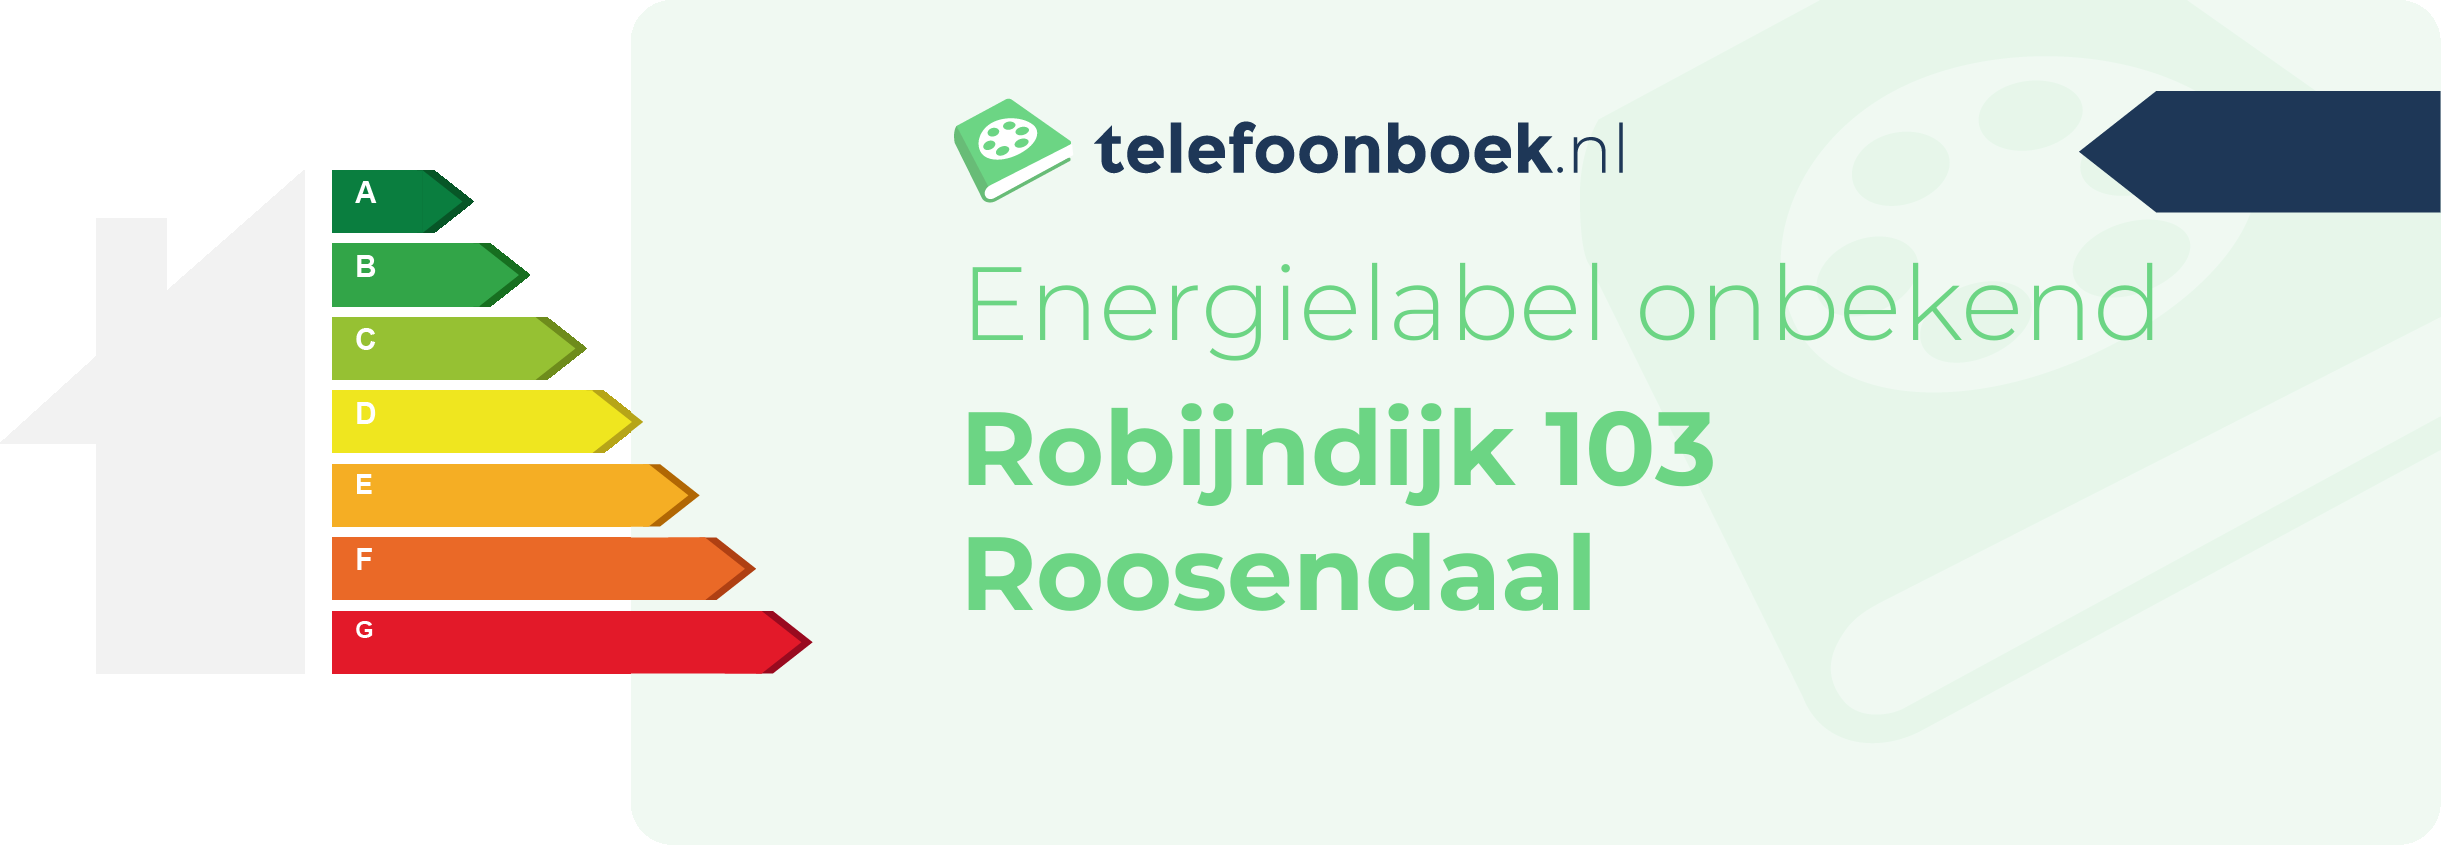 Energielabel Robijndijk 103 Roosendaal